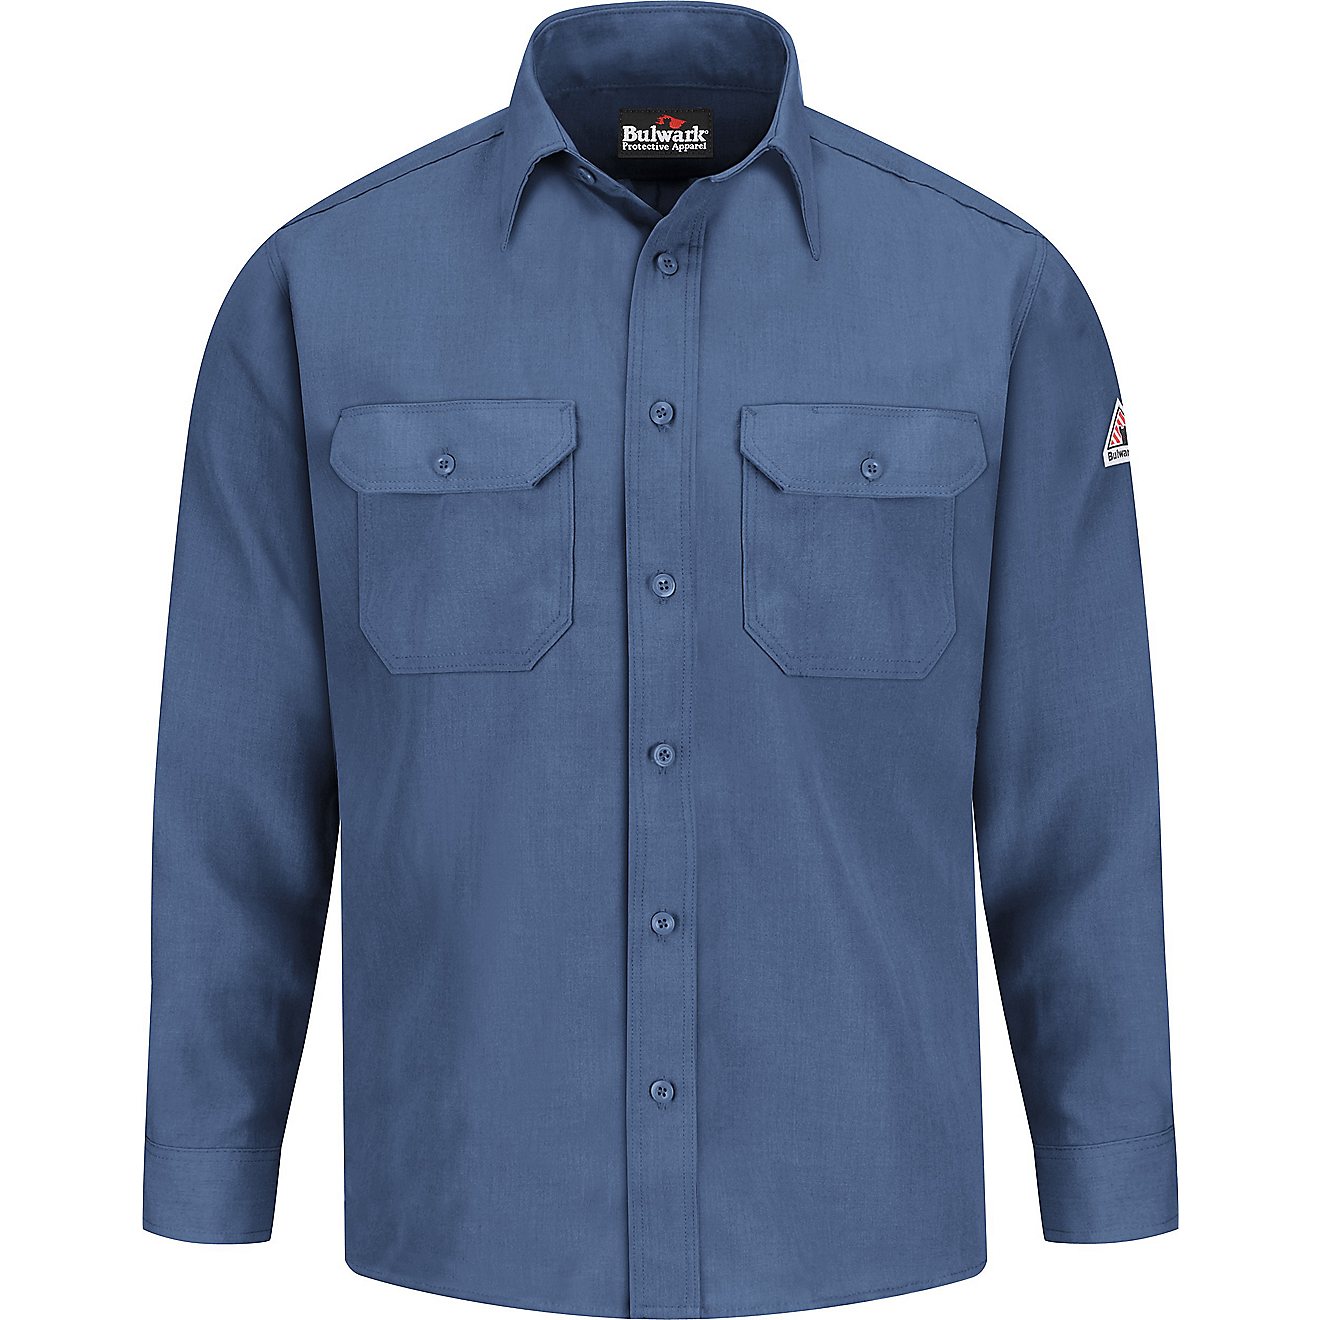 Bulwark Men's Lightweight Nomex FR Uniform Shirt                                                                                 - view number 1